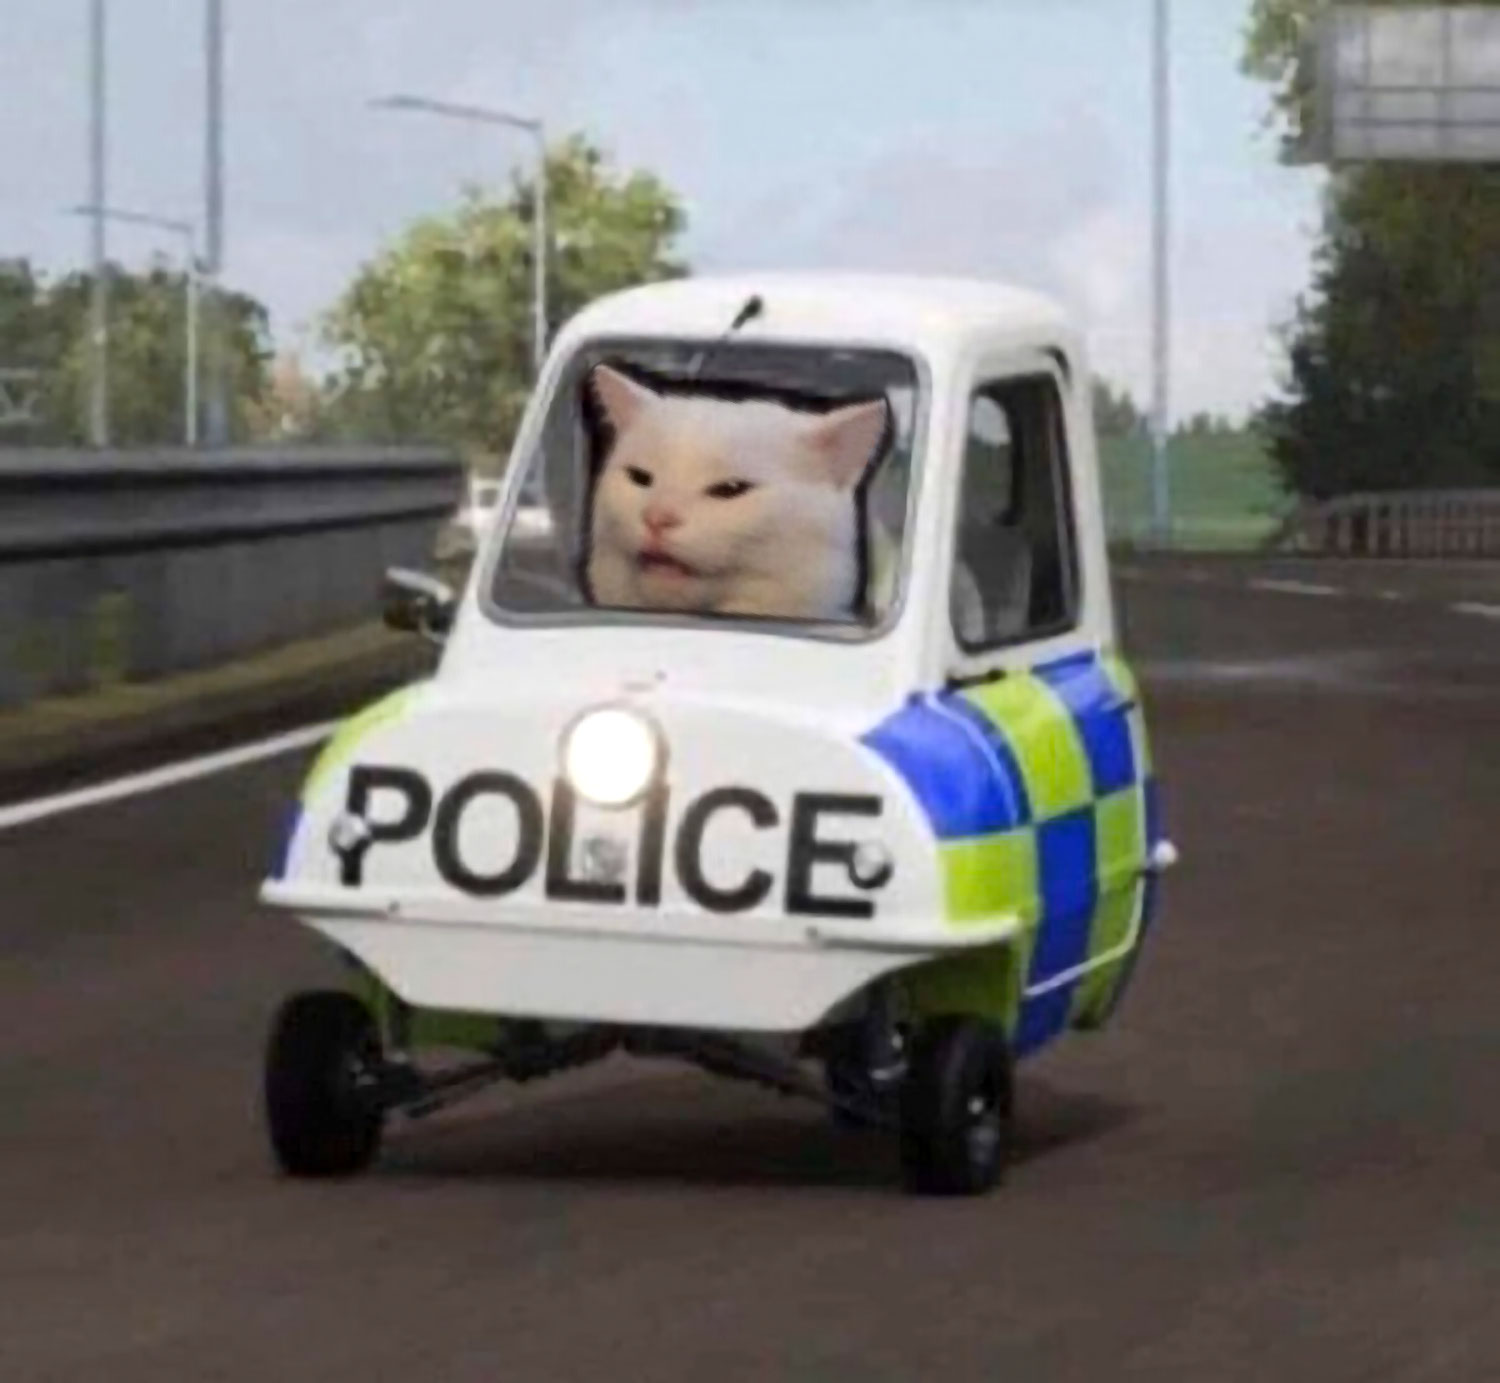 Cat police.jpg